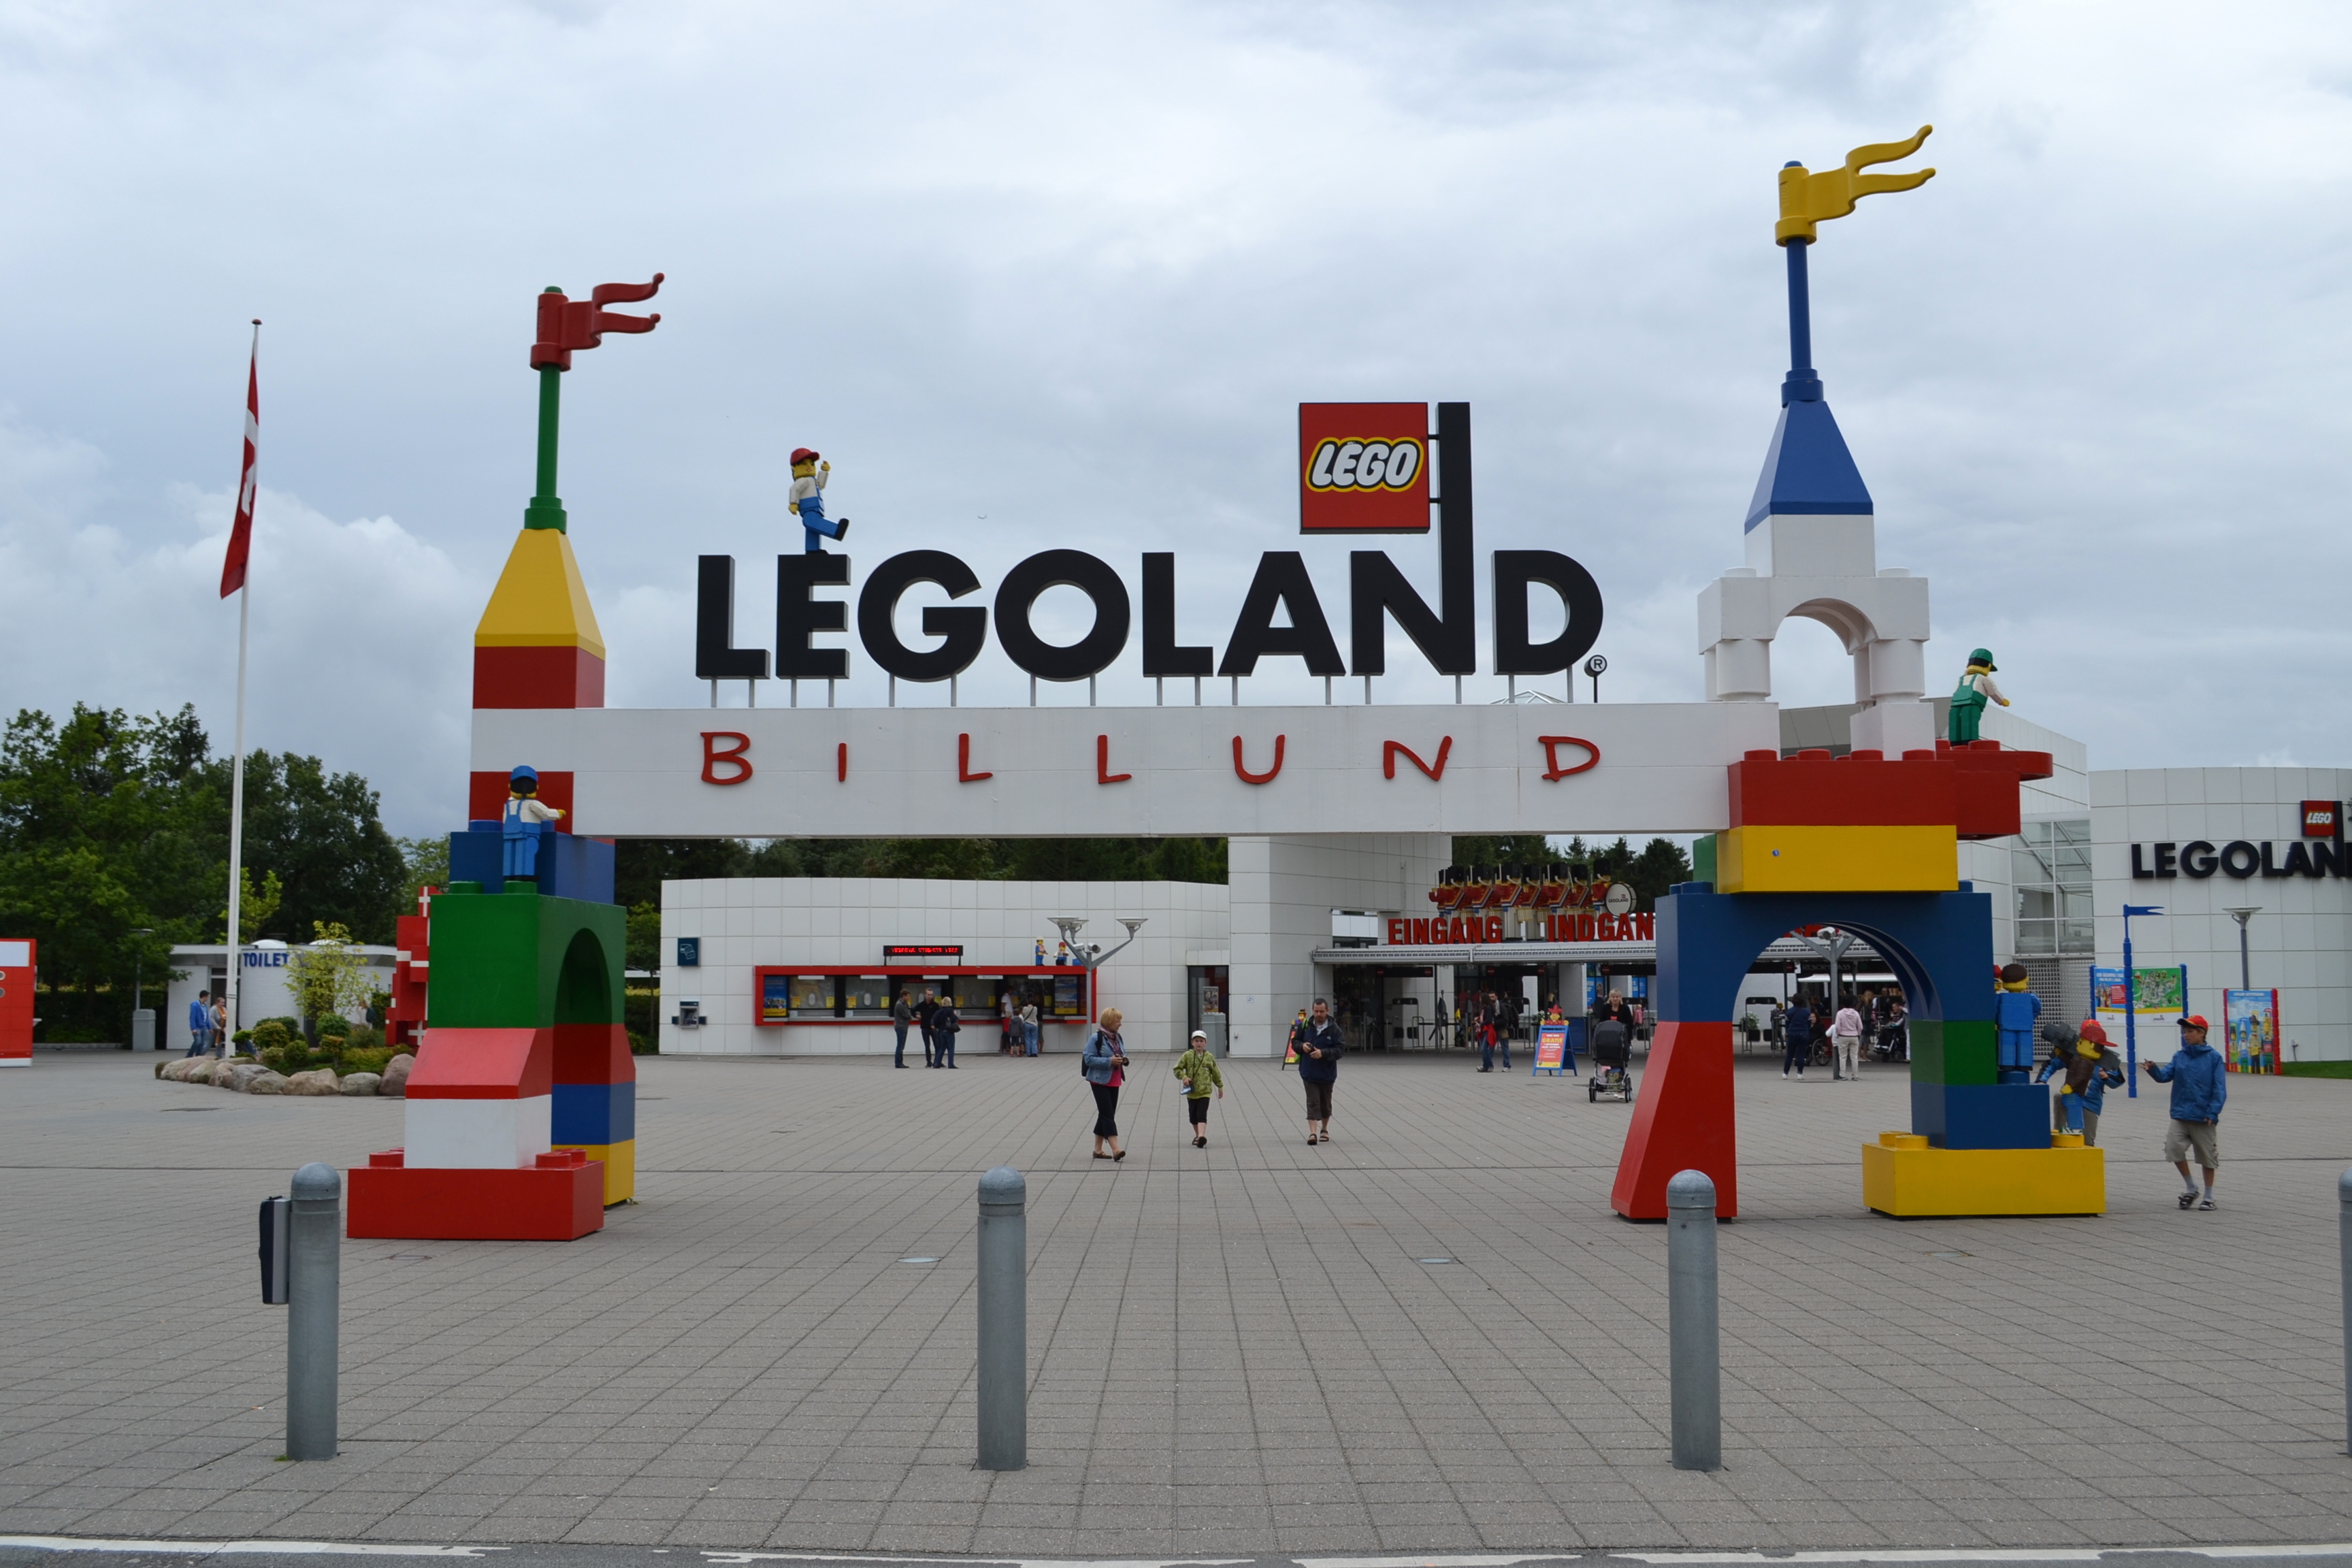 Where Legoland amusement park exist?